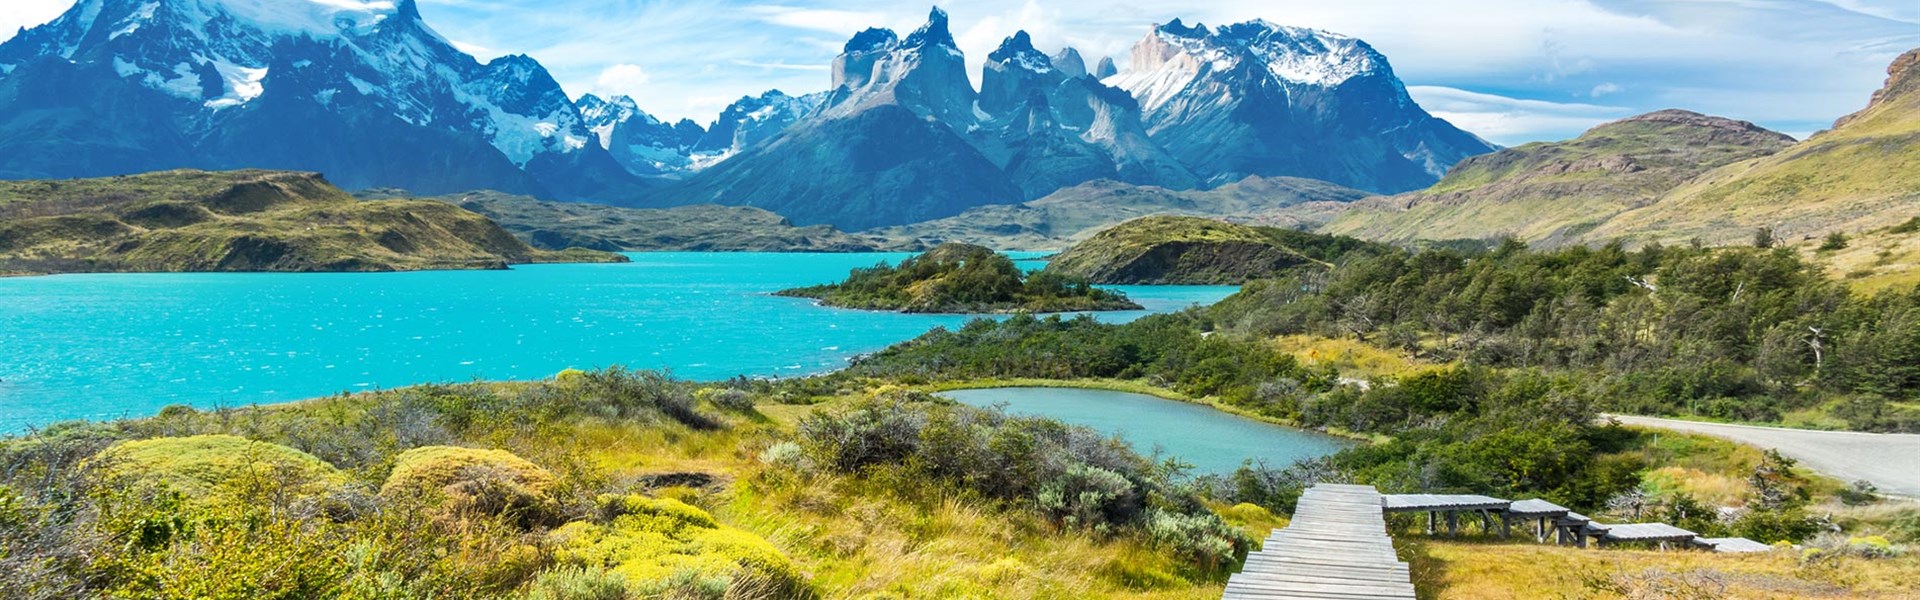 Jižní Amerika: Argentinská a Chilská Patagonie s průvodcem - 